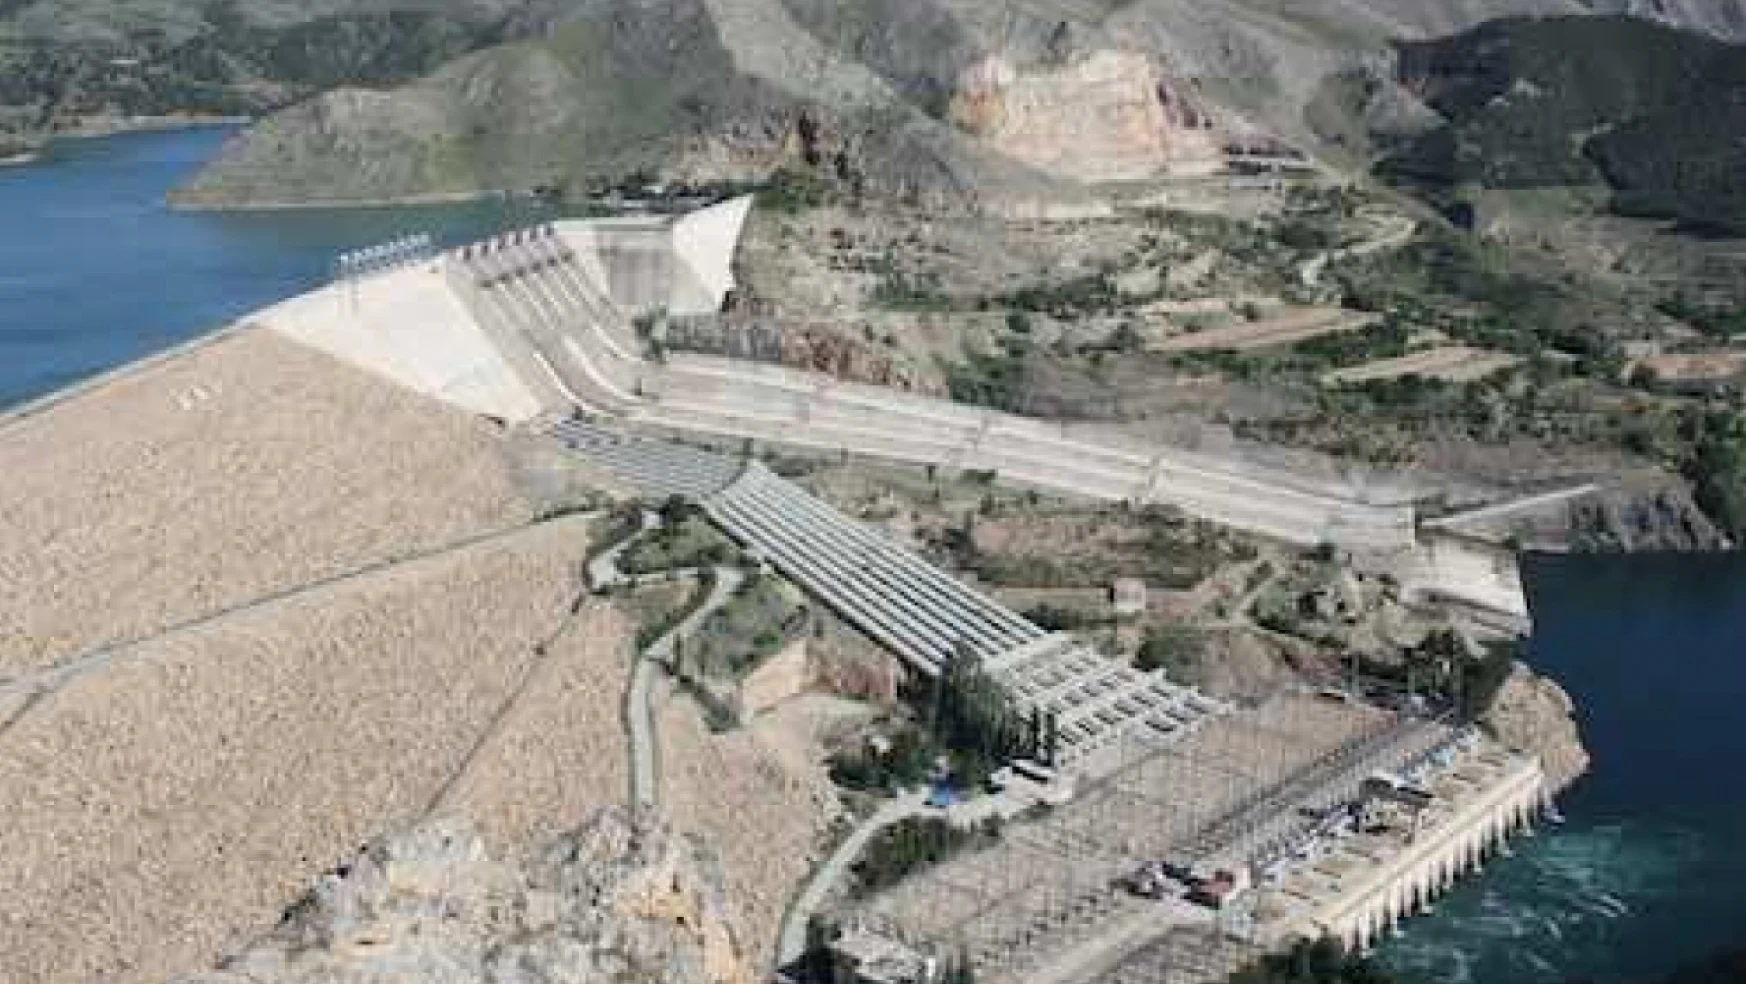 AK Partililerin Keban Barajı'na işçi alımı kavgası karakolda bitti